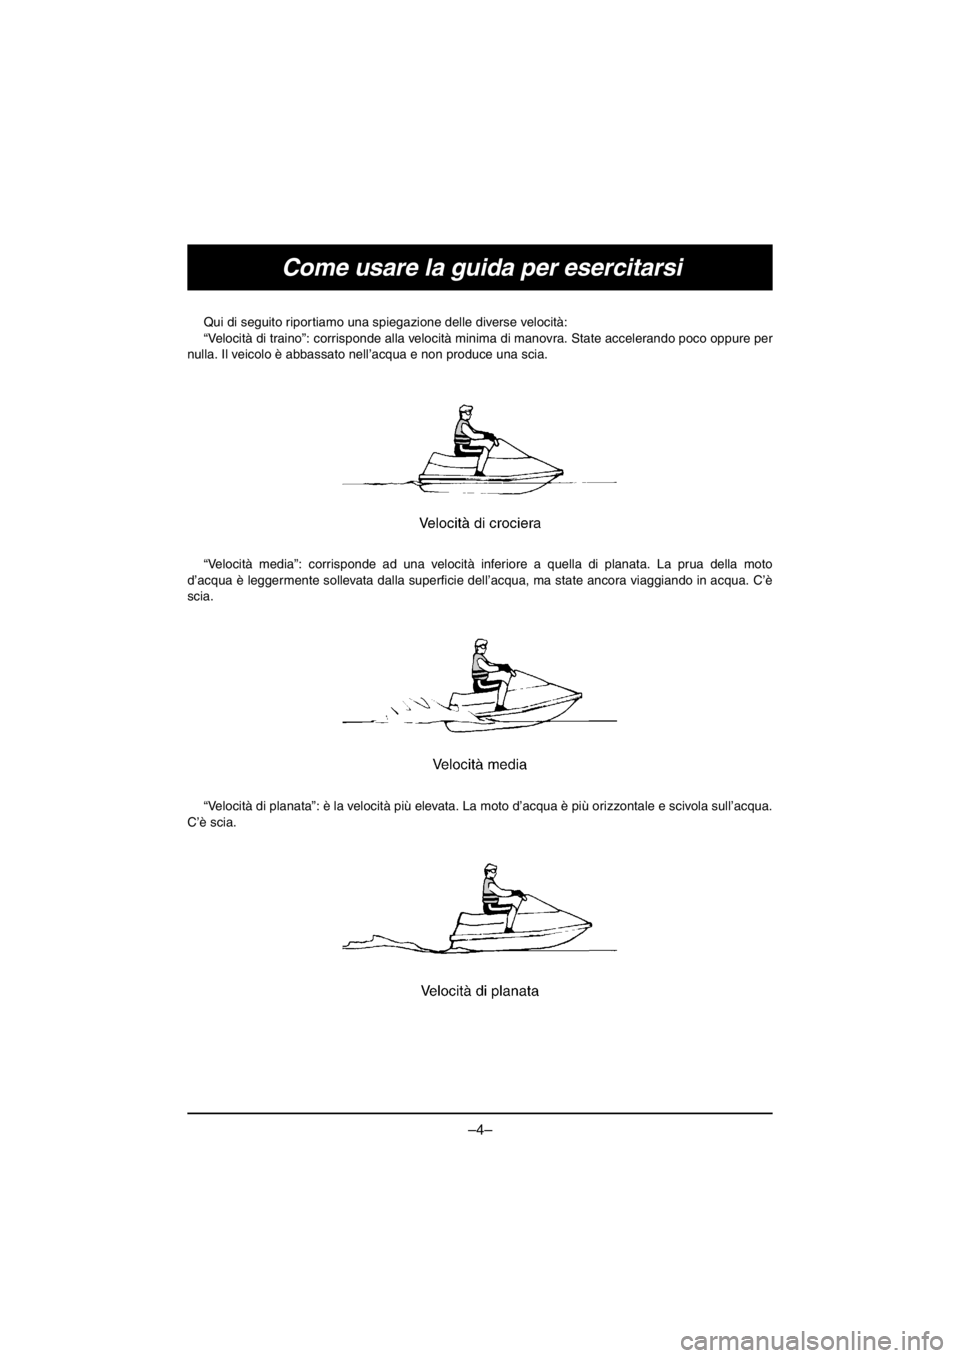 YAMAHA V1 2016  Owners Manual –4–
Come usare la guida per esercitarsi
Qui di seguito riportiamo una spiegazione delle diverse velocità: 
“Velocità di traino”: corrisponde alla velocità minima di manovra. State acceleran